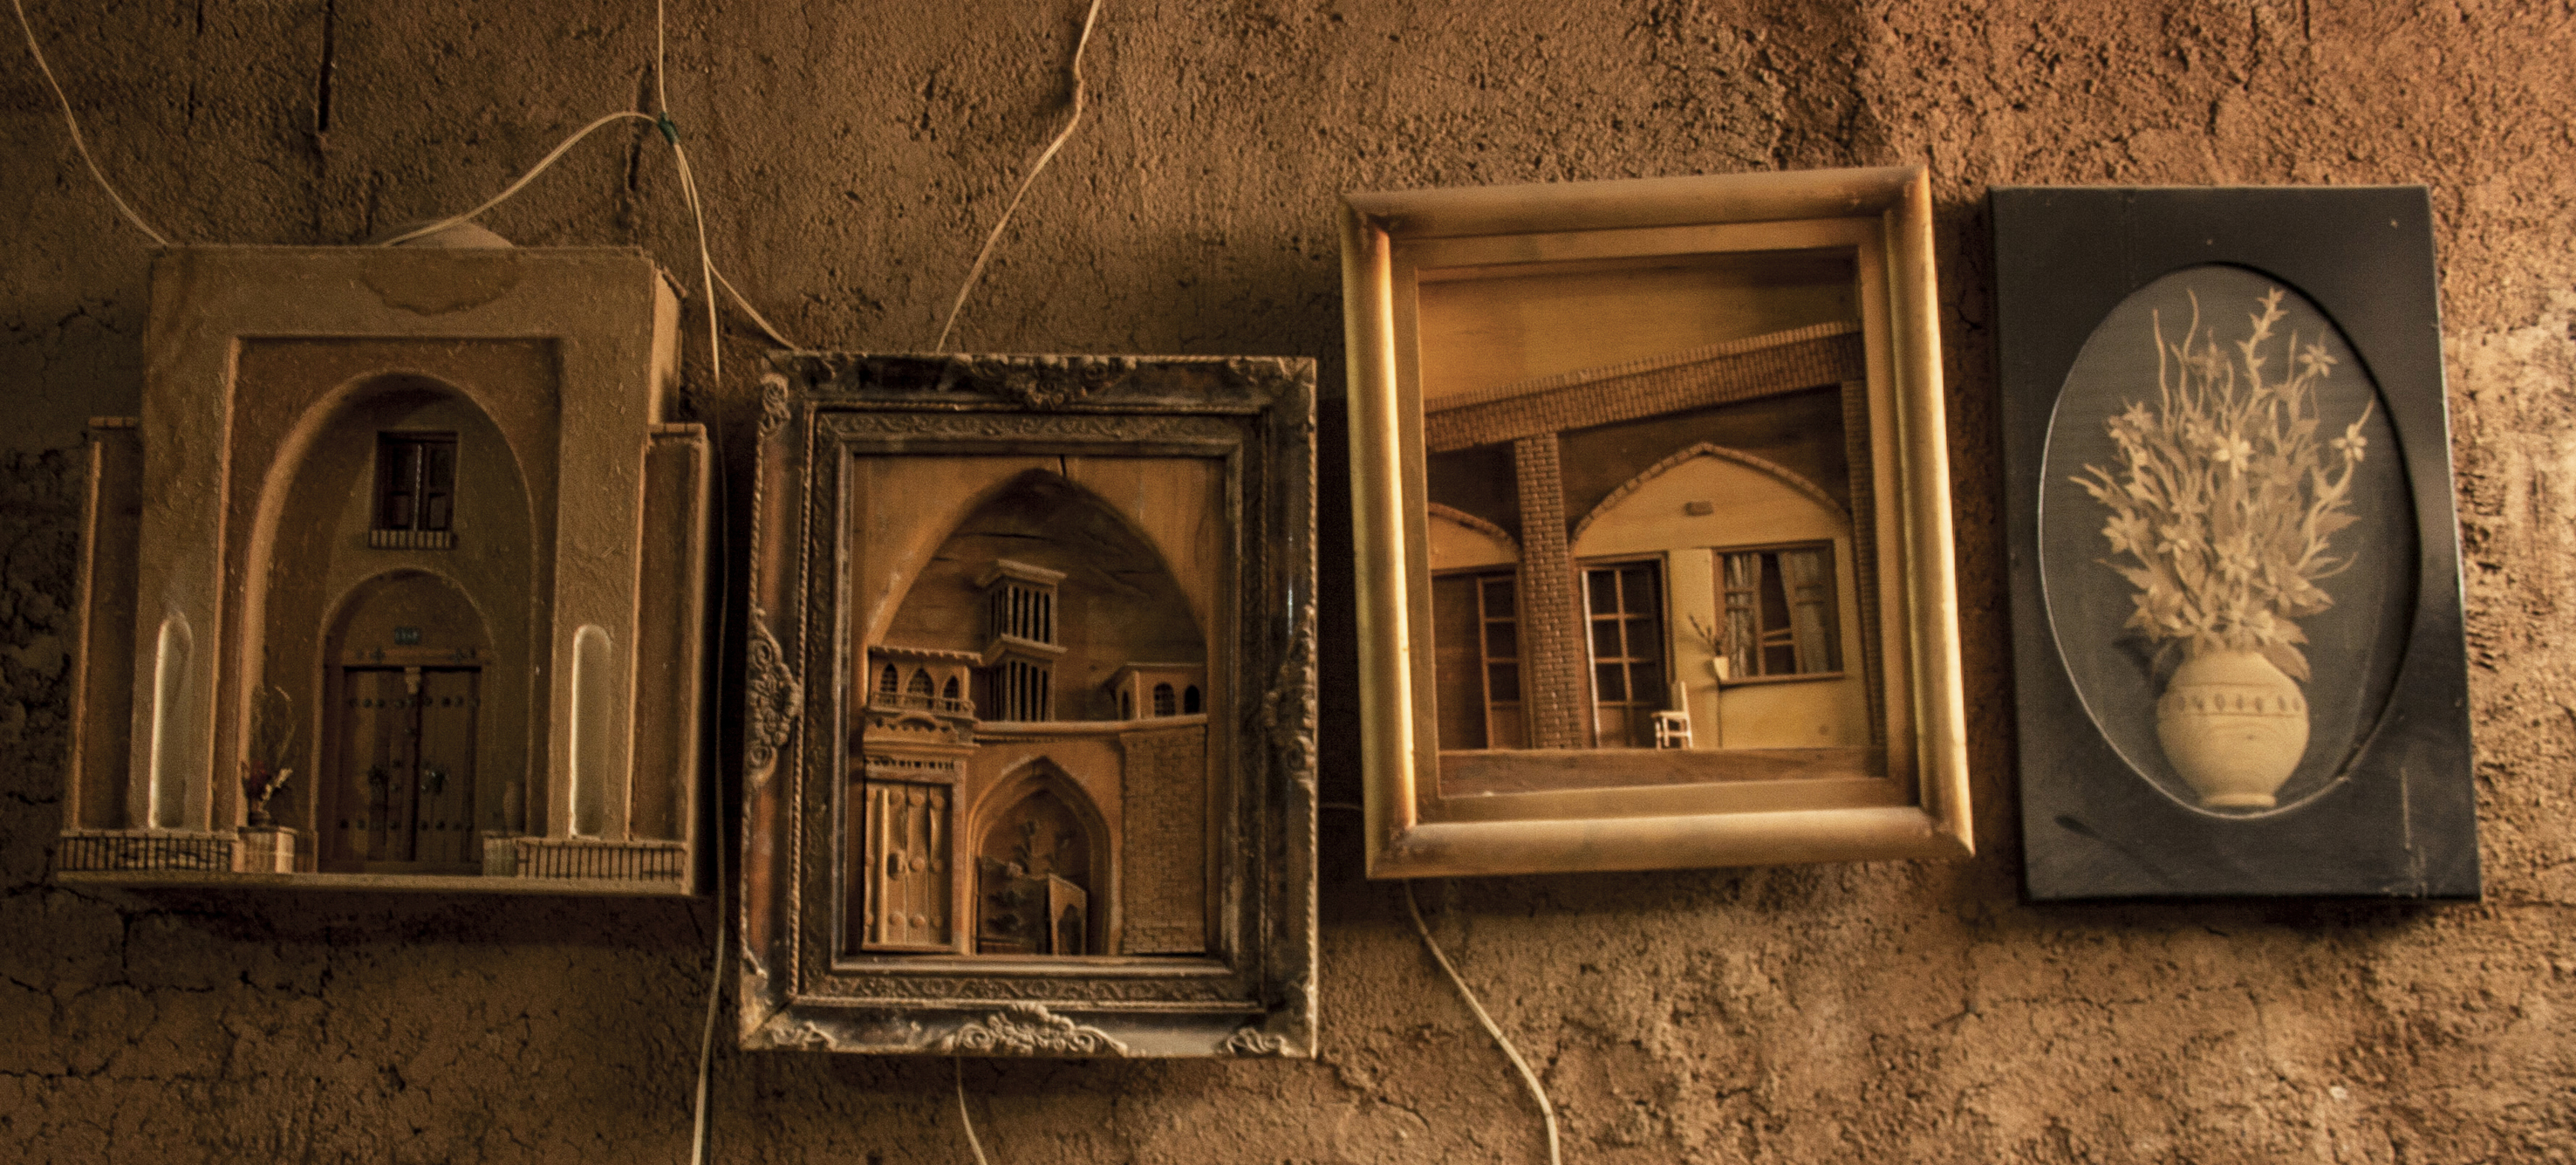 ساخت متفاوت ترین صنایع دستی چوبی توسط هنرمند نجف آبادی